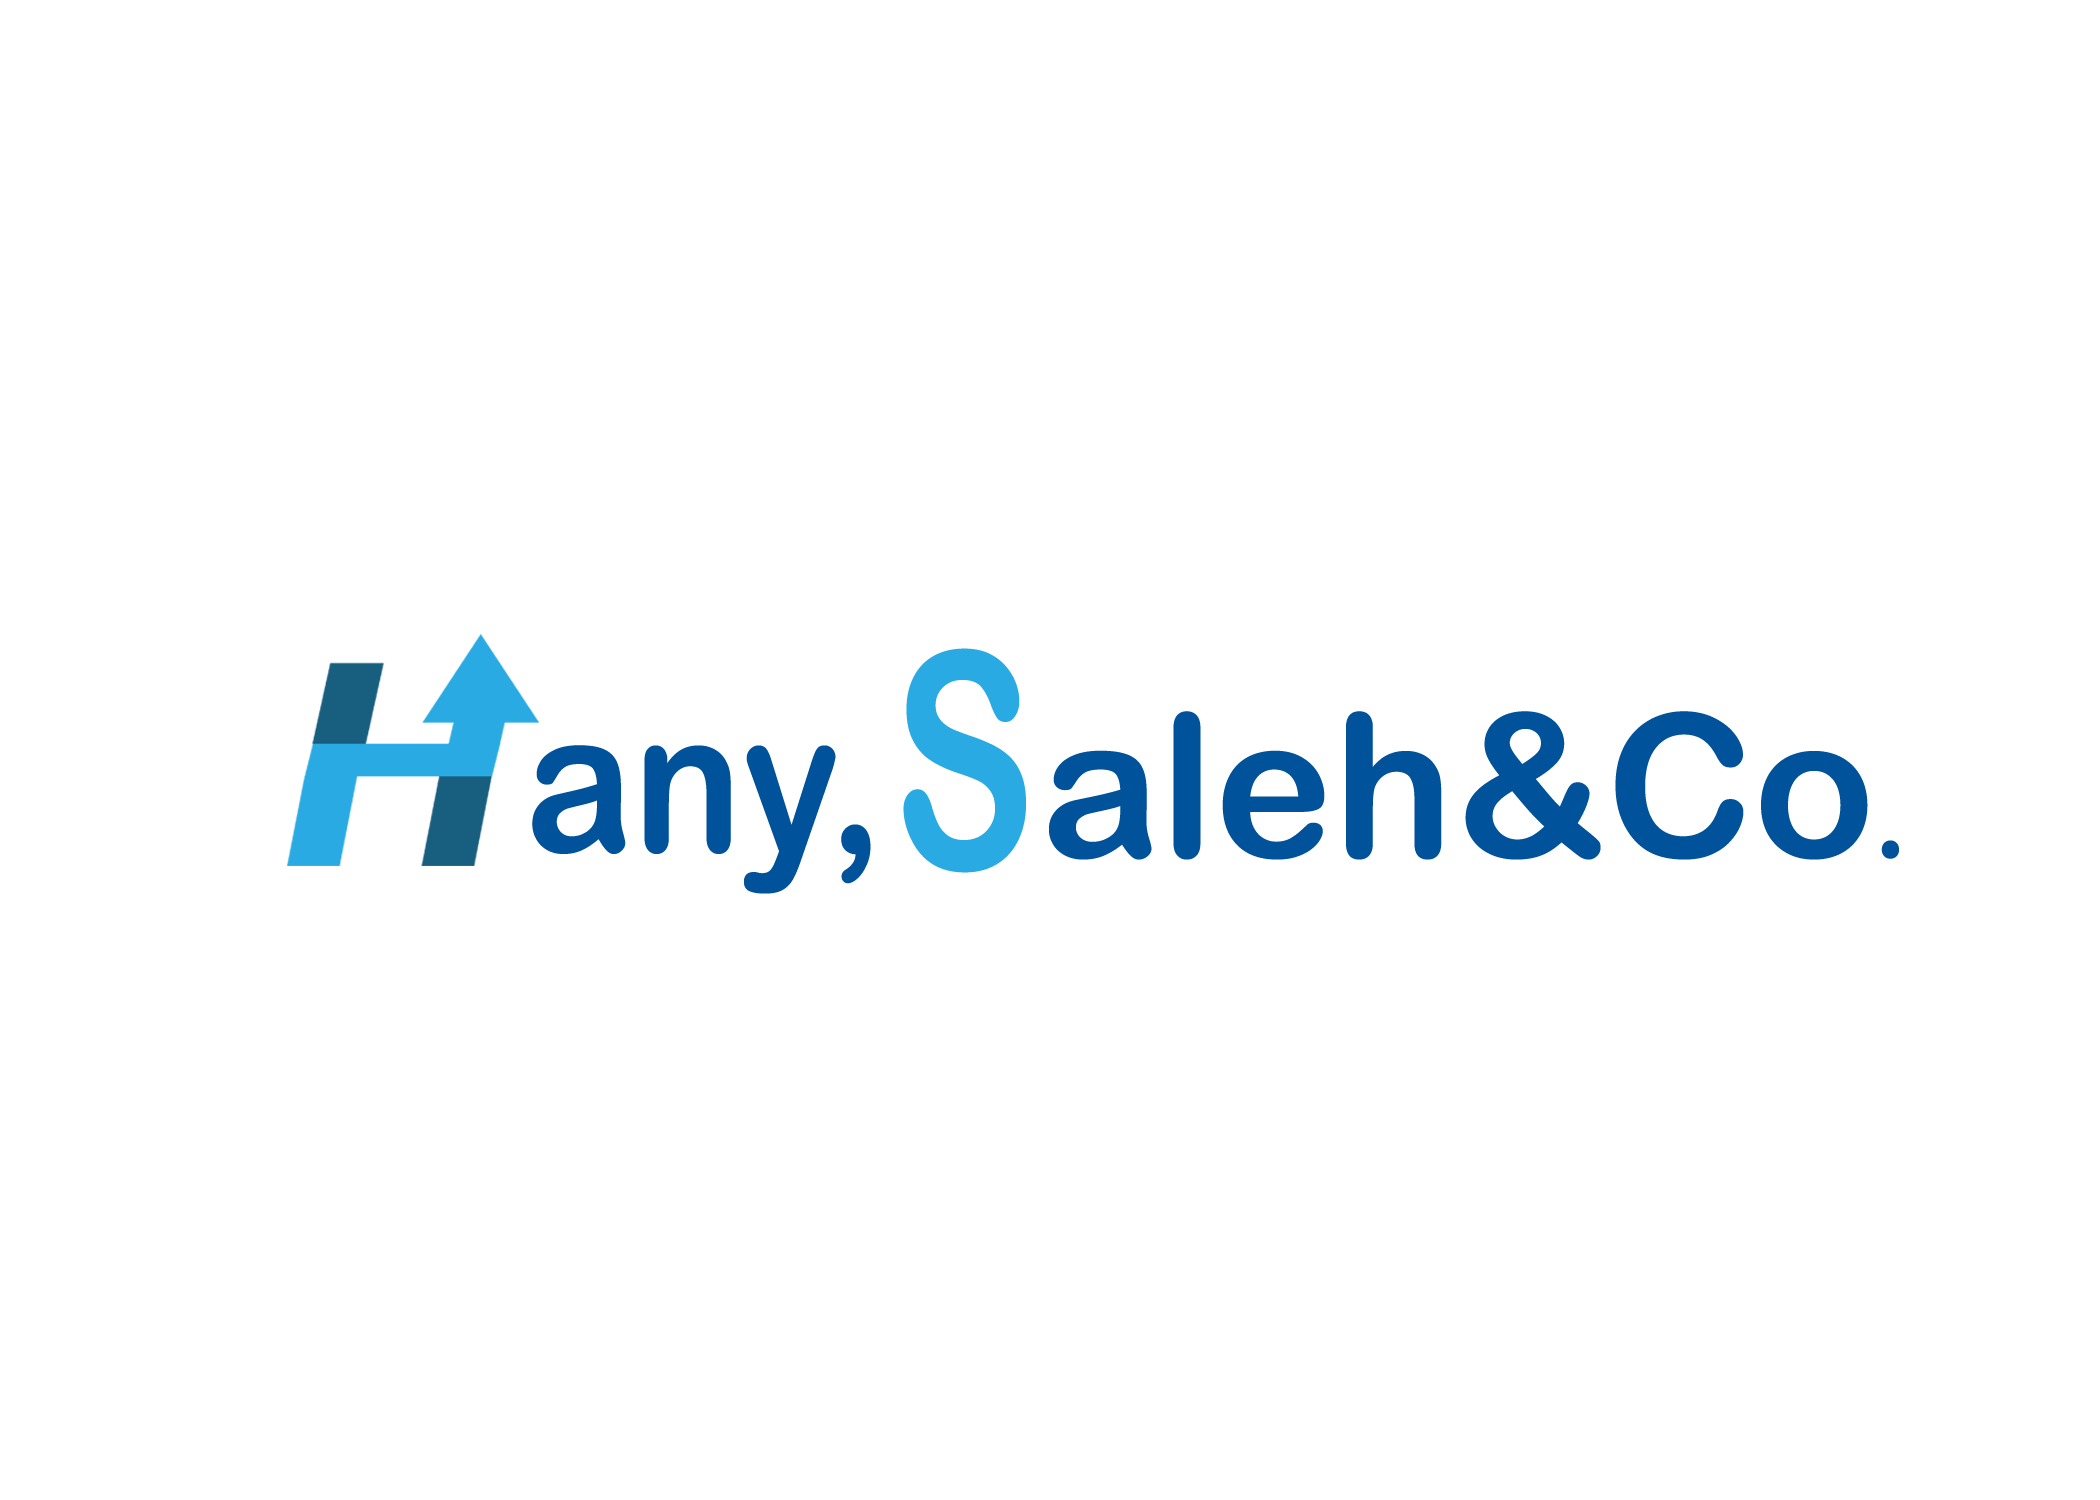 Hany,Saleh&Co.